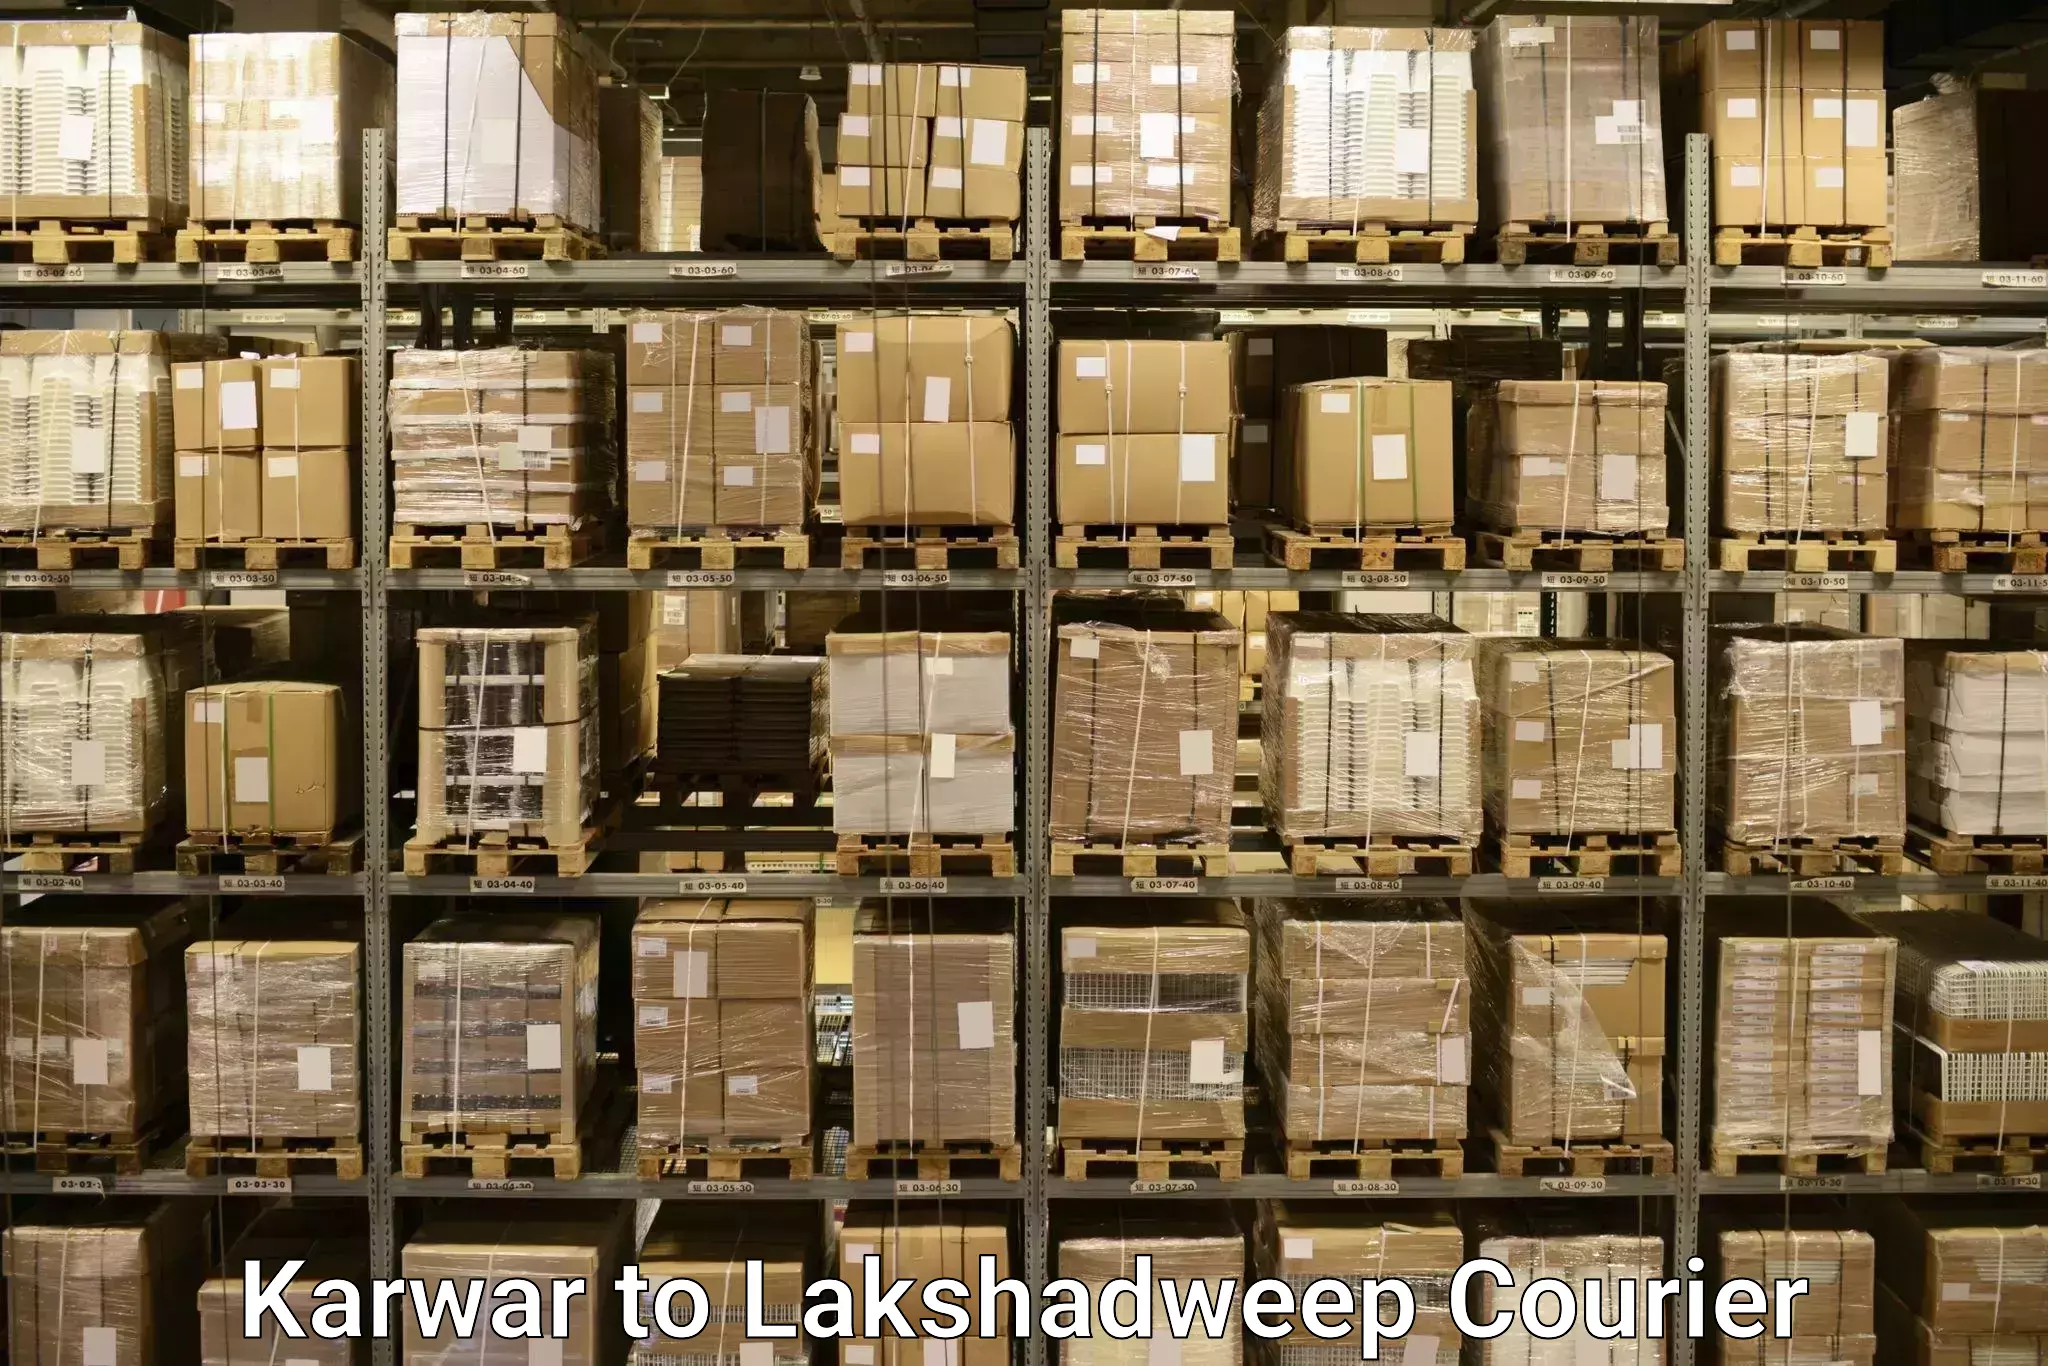 Door to door luggage delivery Karwar to Lakshadweep